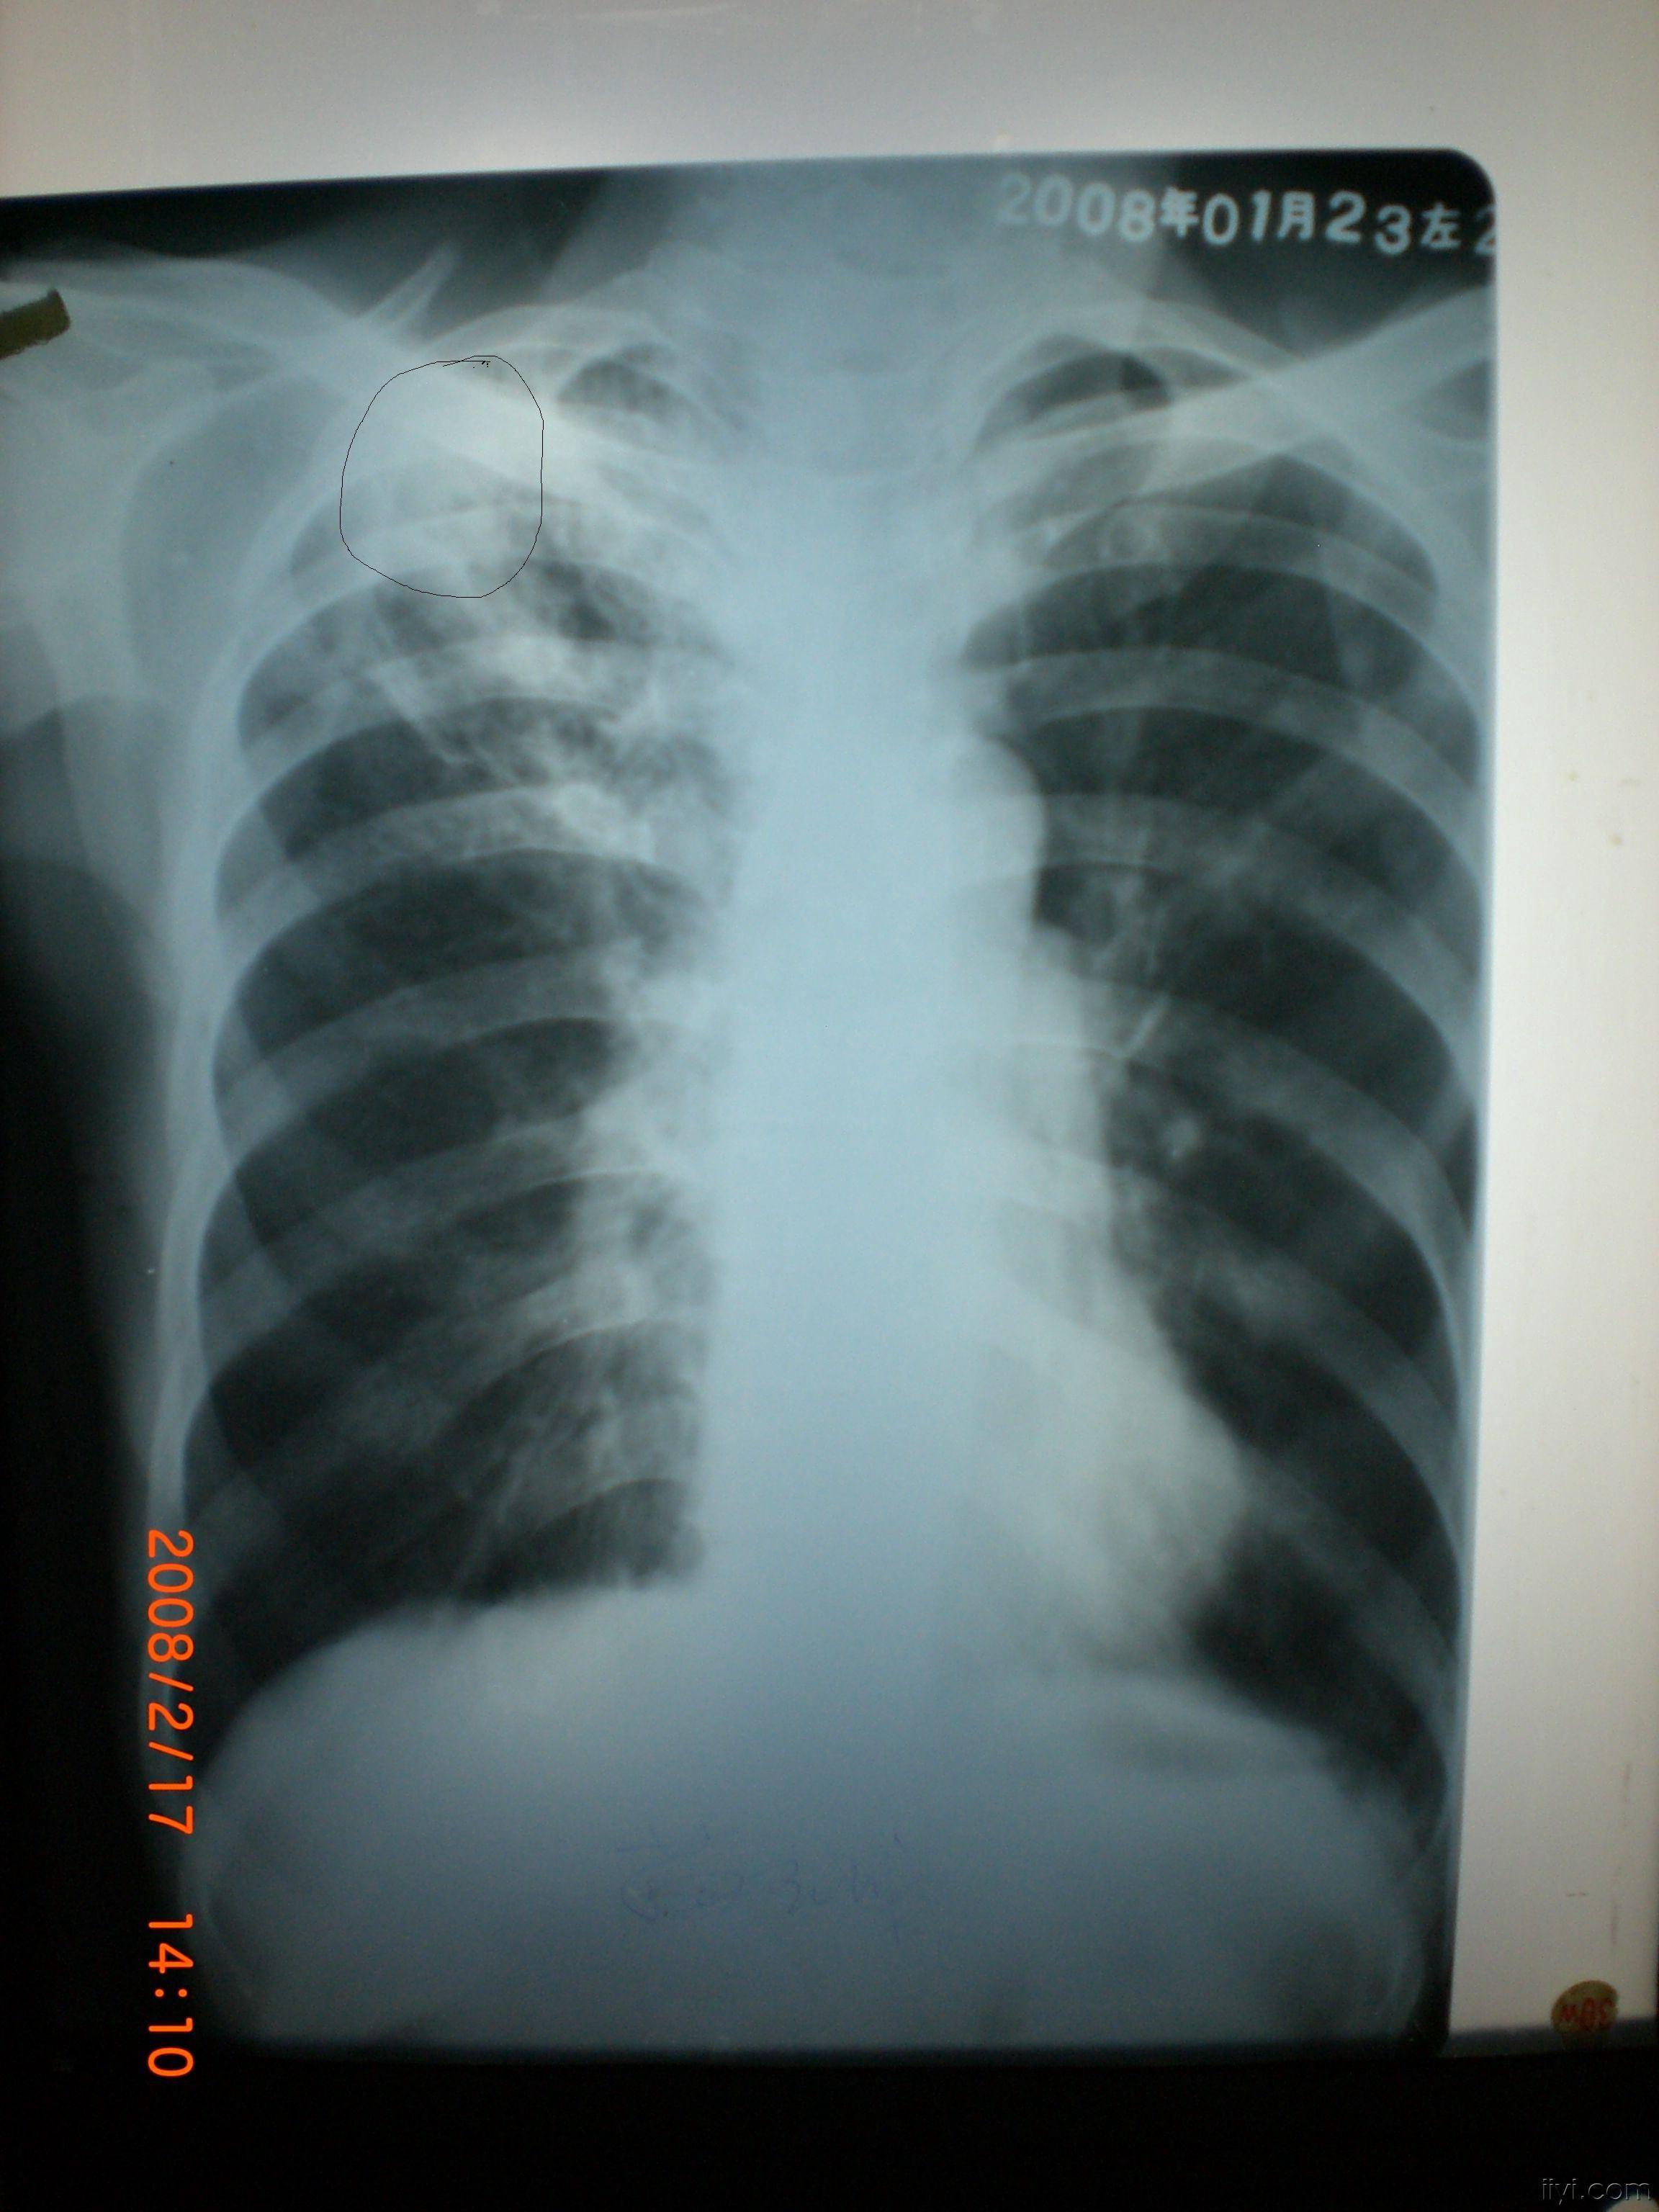 lol: )结合上肺较均匀密度高,我想肺结核肯定有的,但是应该想到占位